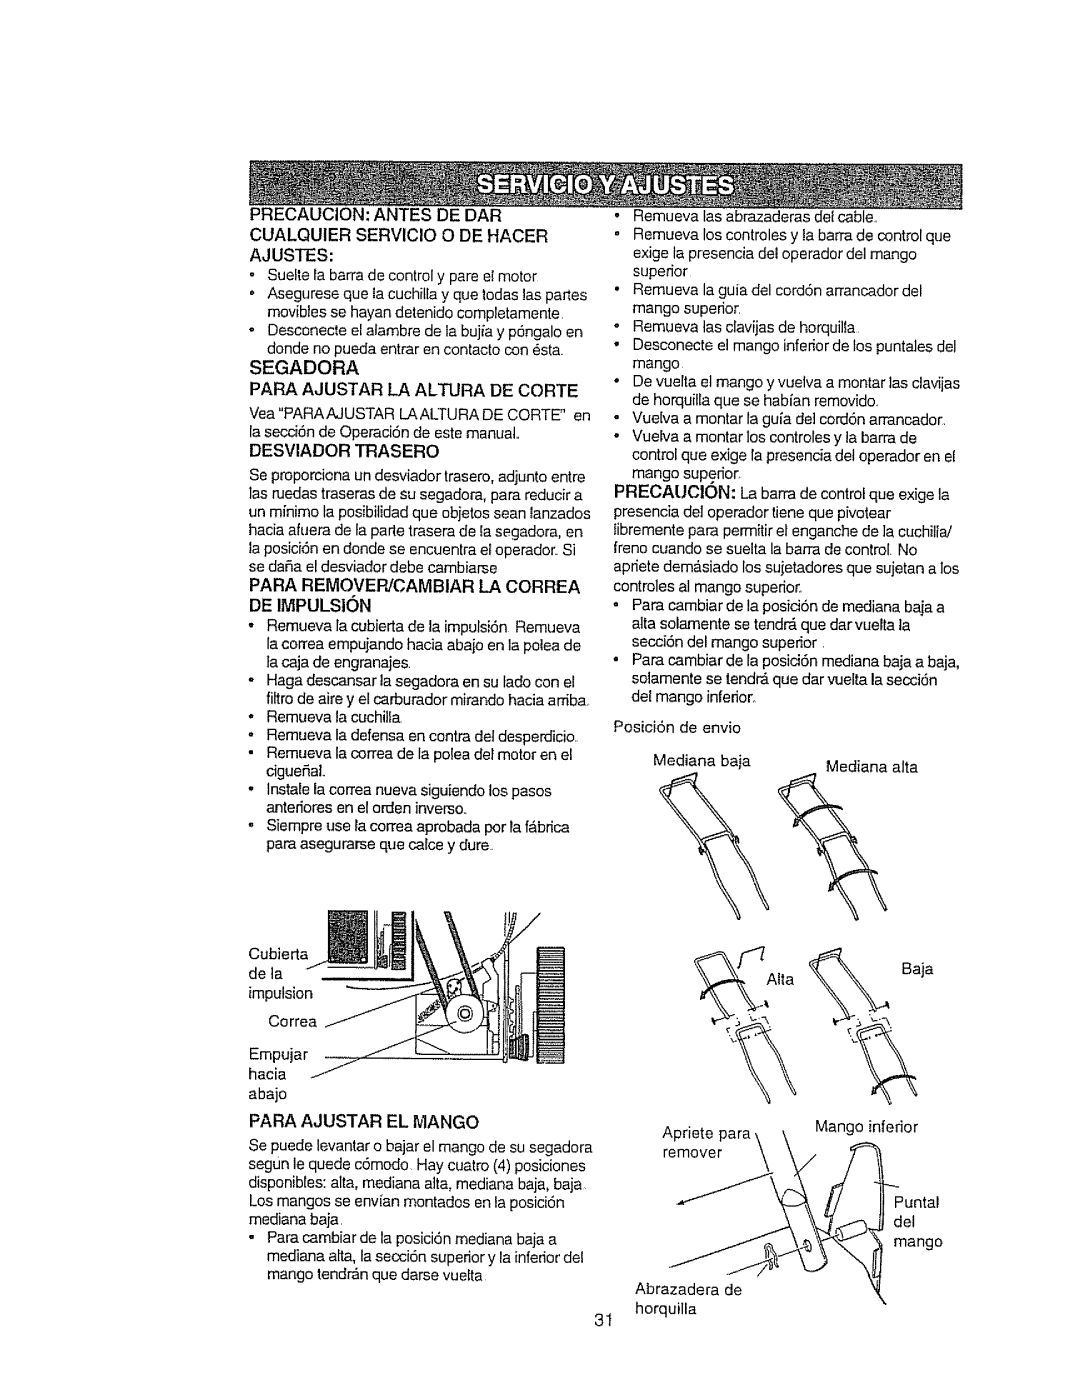 Craftsman 917.377592 manual • Sueftela barradecontrol y pareel motor, Segadora Para Ajustar La Altura De Carte, JTAIta % 